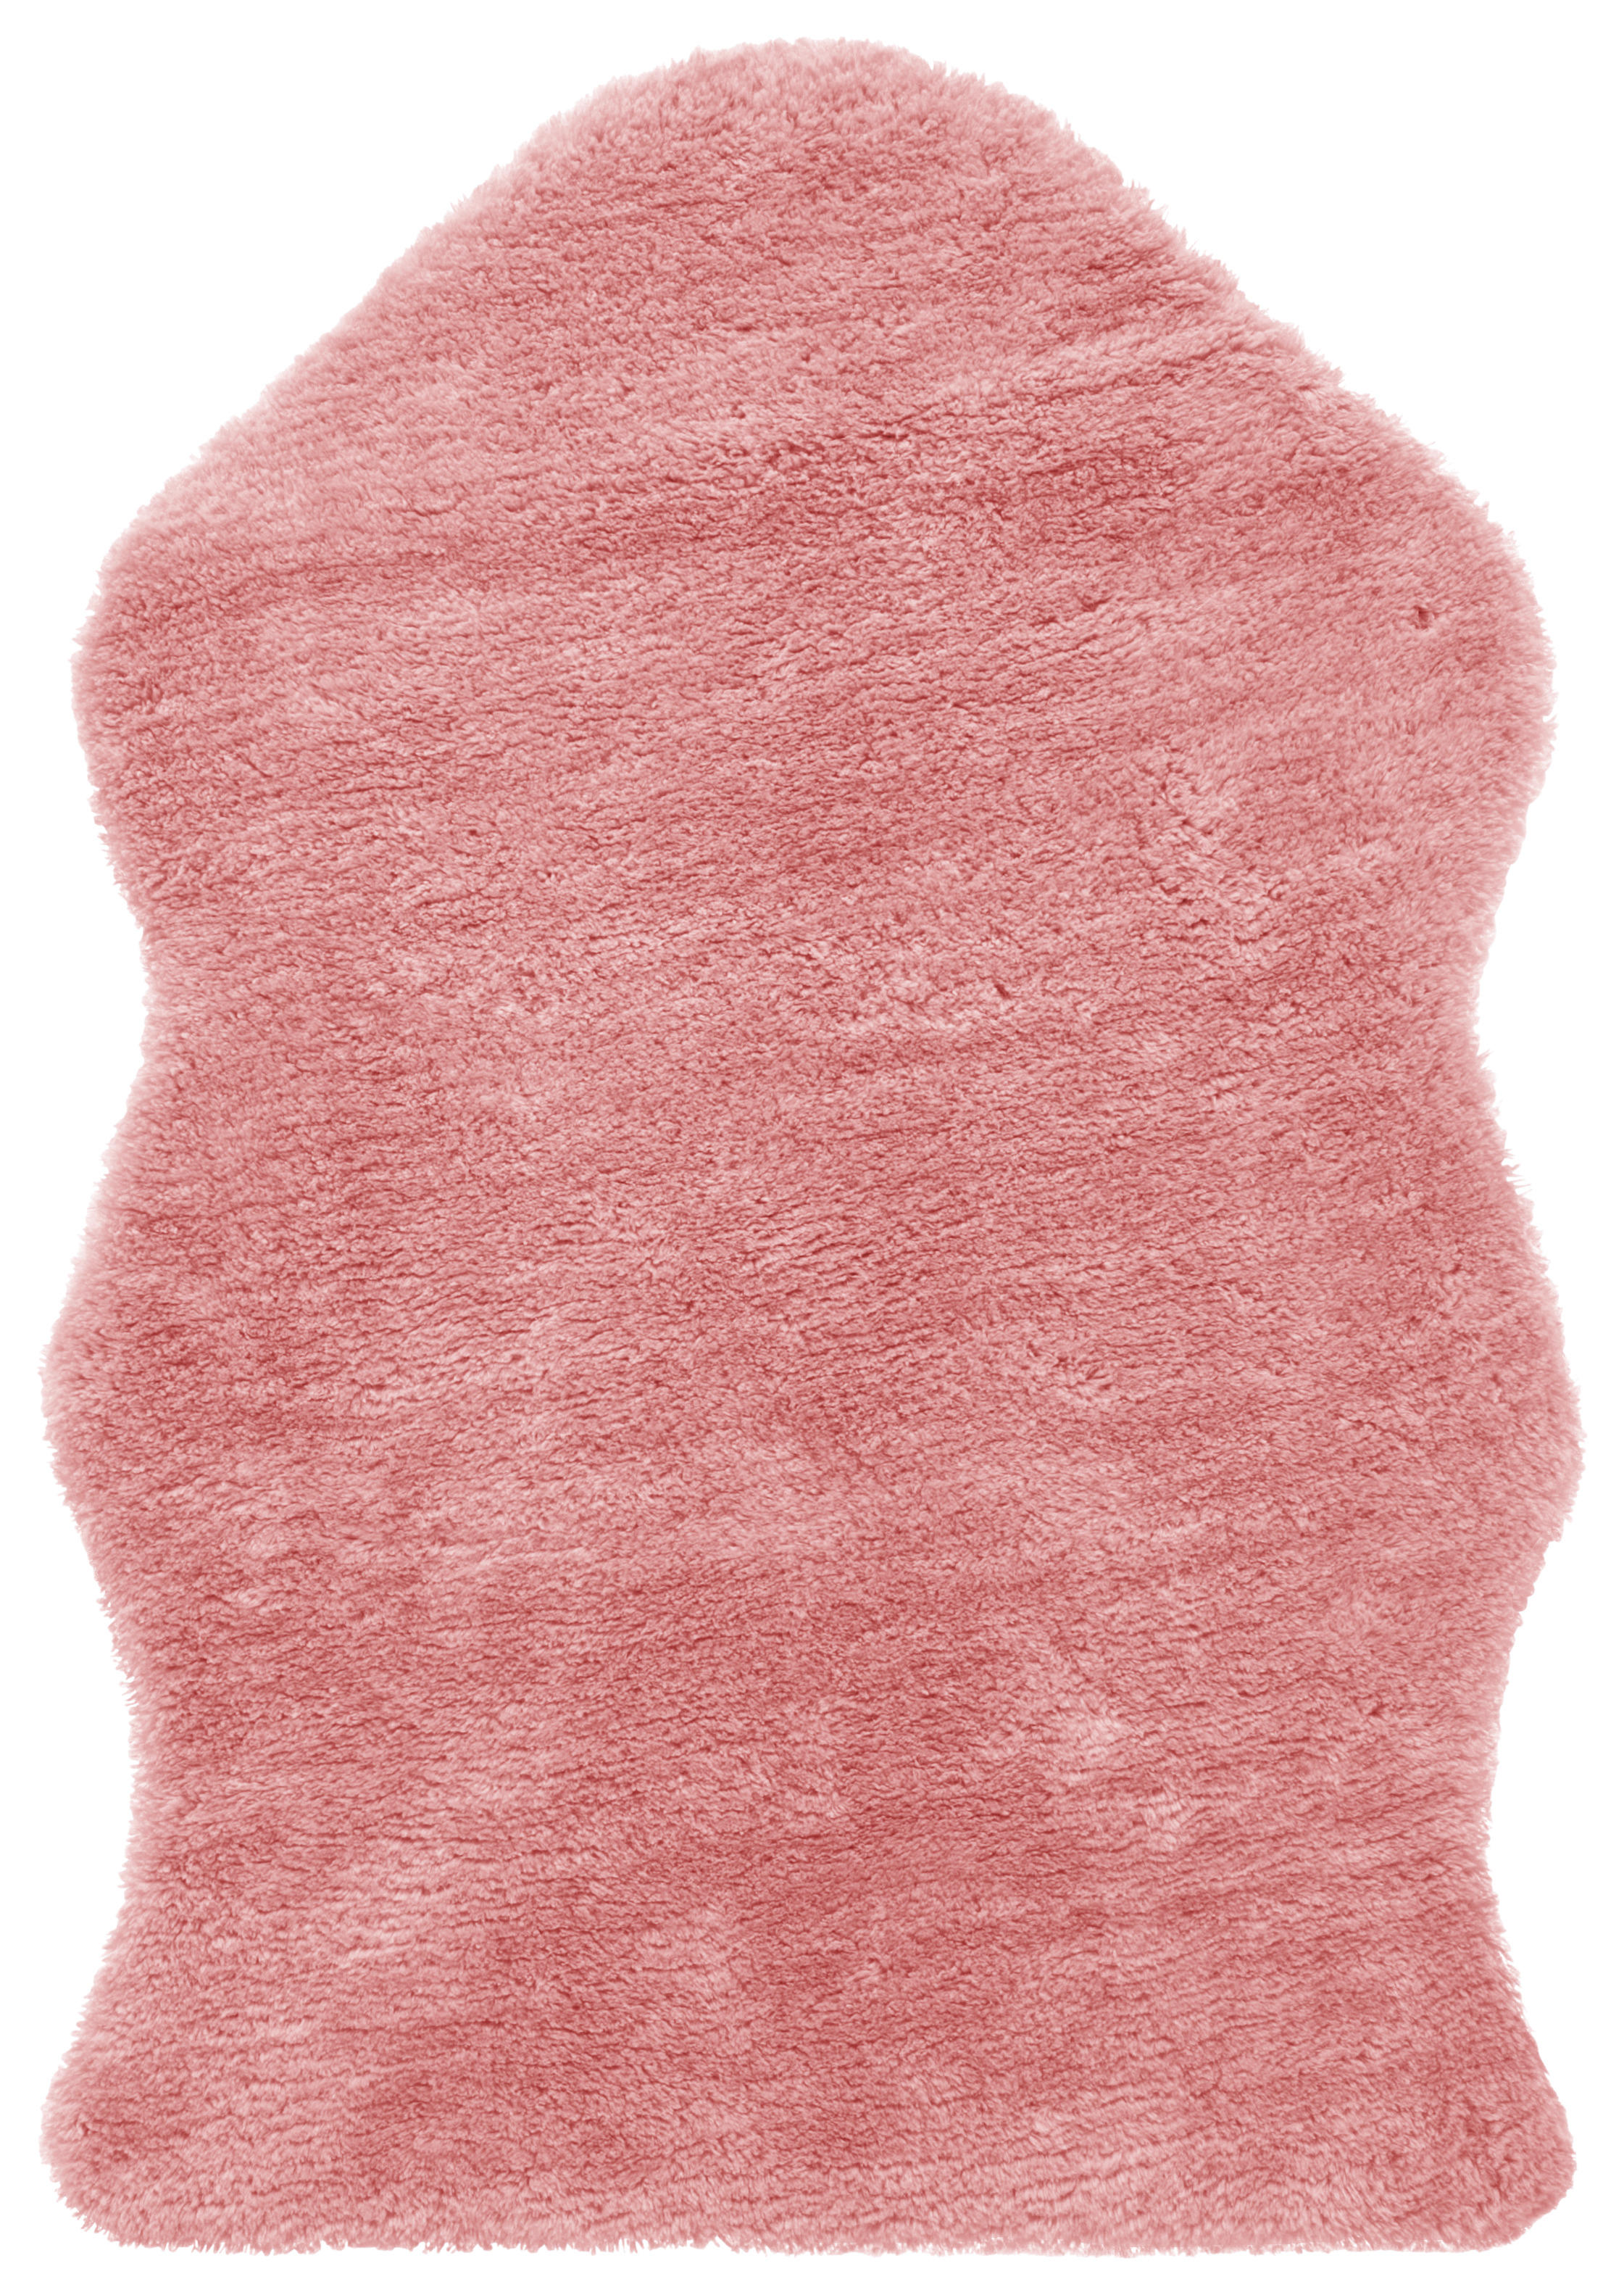 Fellimitat Fellimitat rosa B/L: ca. 55x80 cm Fellimitat - rosa (55,00/80,00cm)